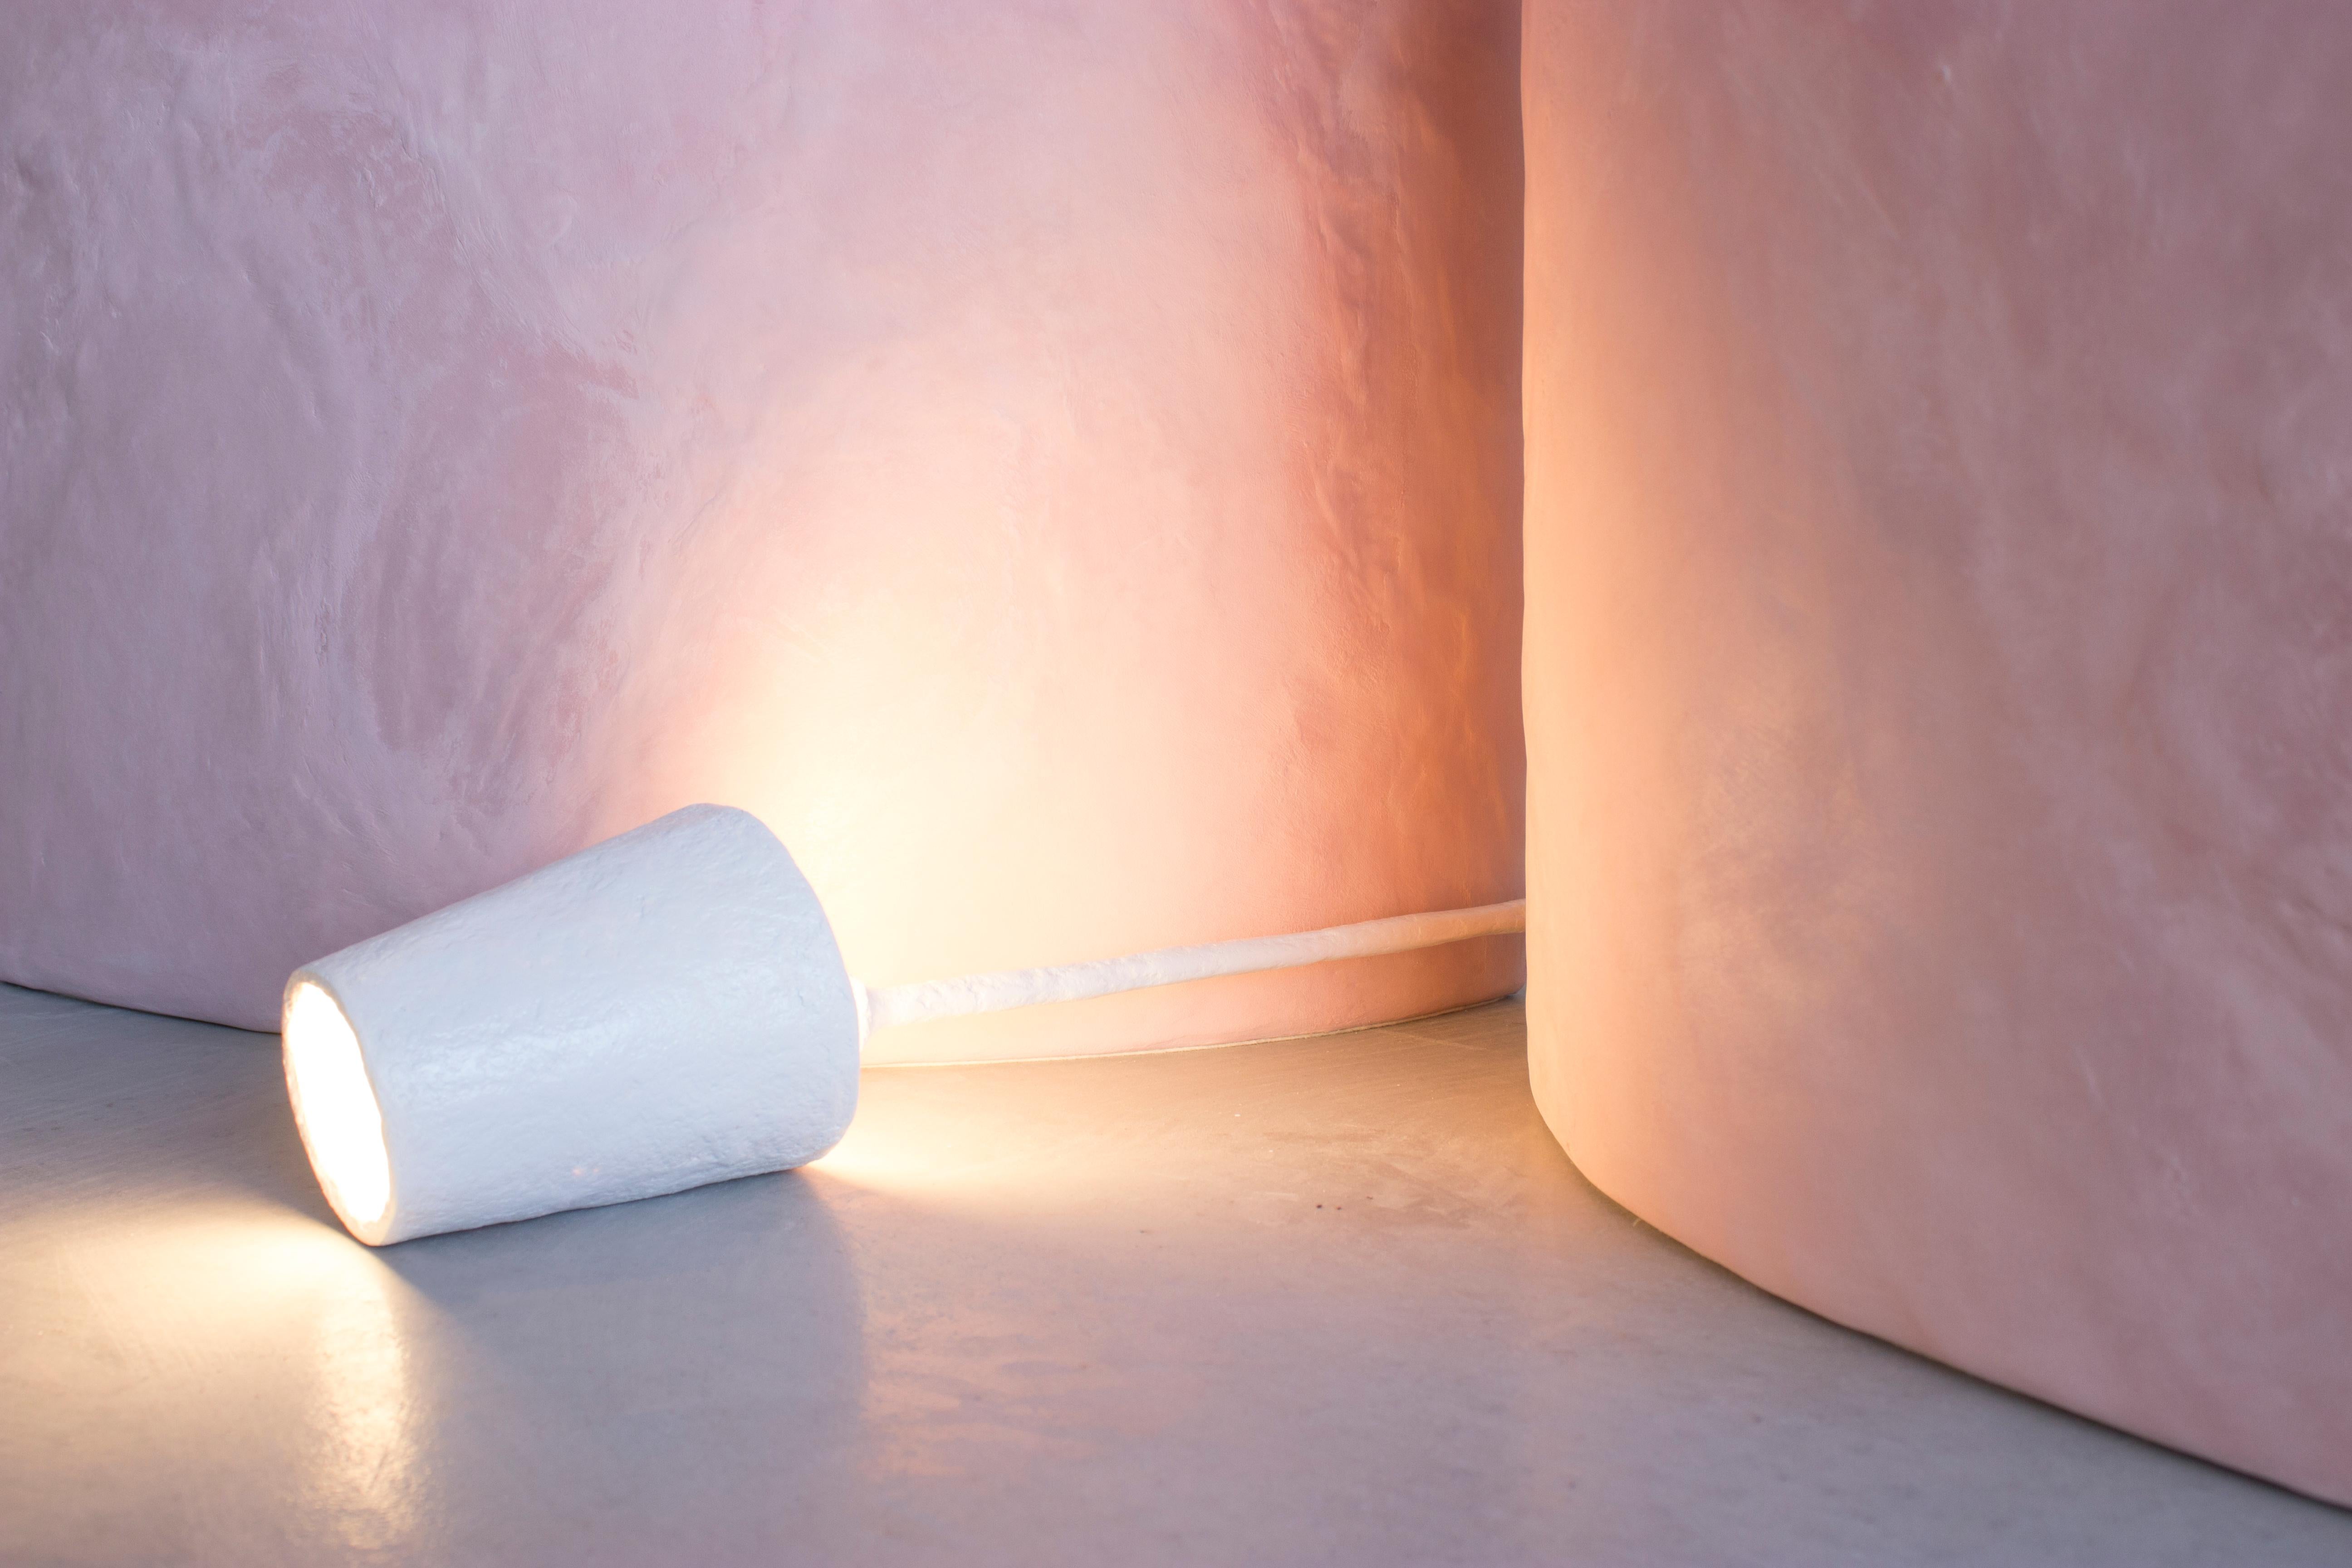 Mini lampe Metti par Bailey Fontaine
2022
Argile à papier
Blanc
L 5,5